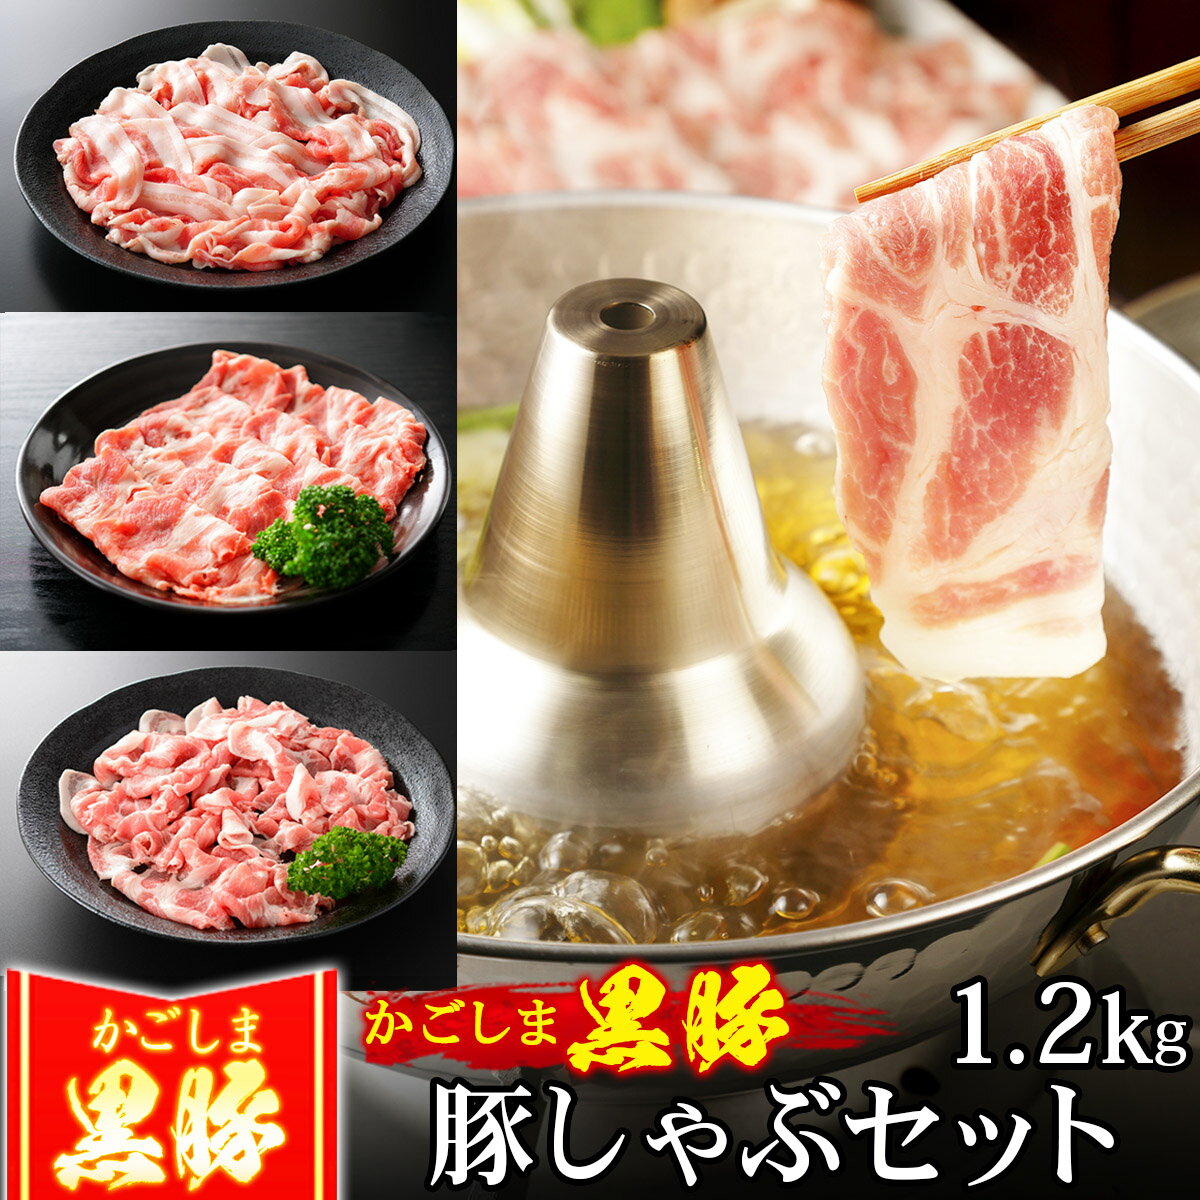 豚丼の具 国産豚 JAPAN X ジャパンエックス 仙臺豚丼 肩ロース肉 6食分 1袋160g 冷凍便